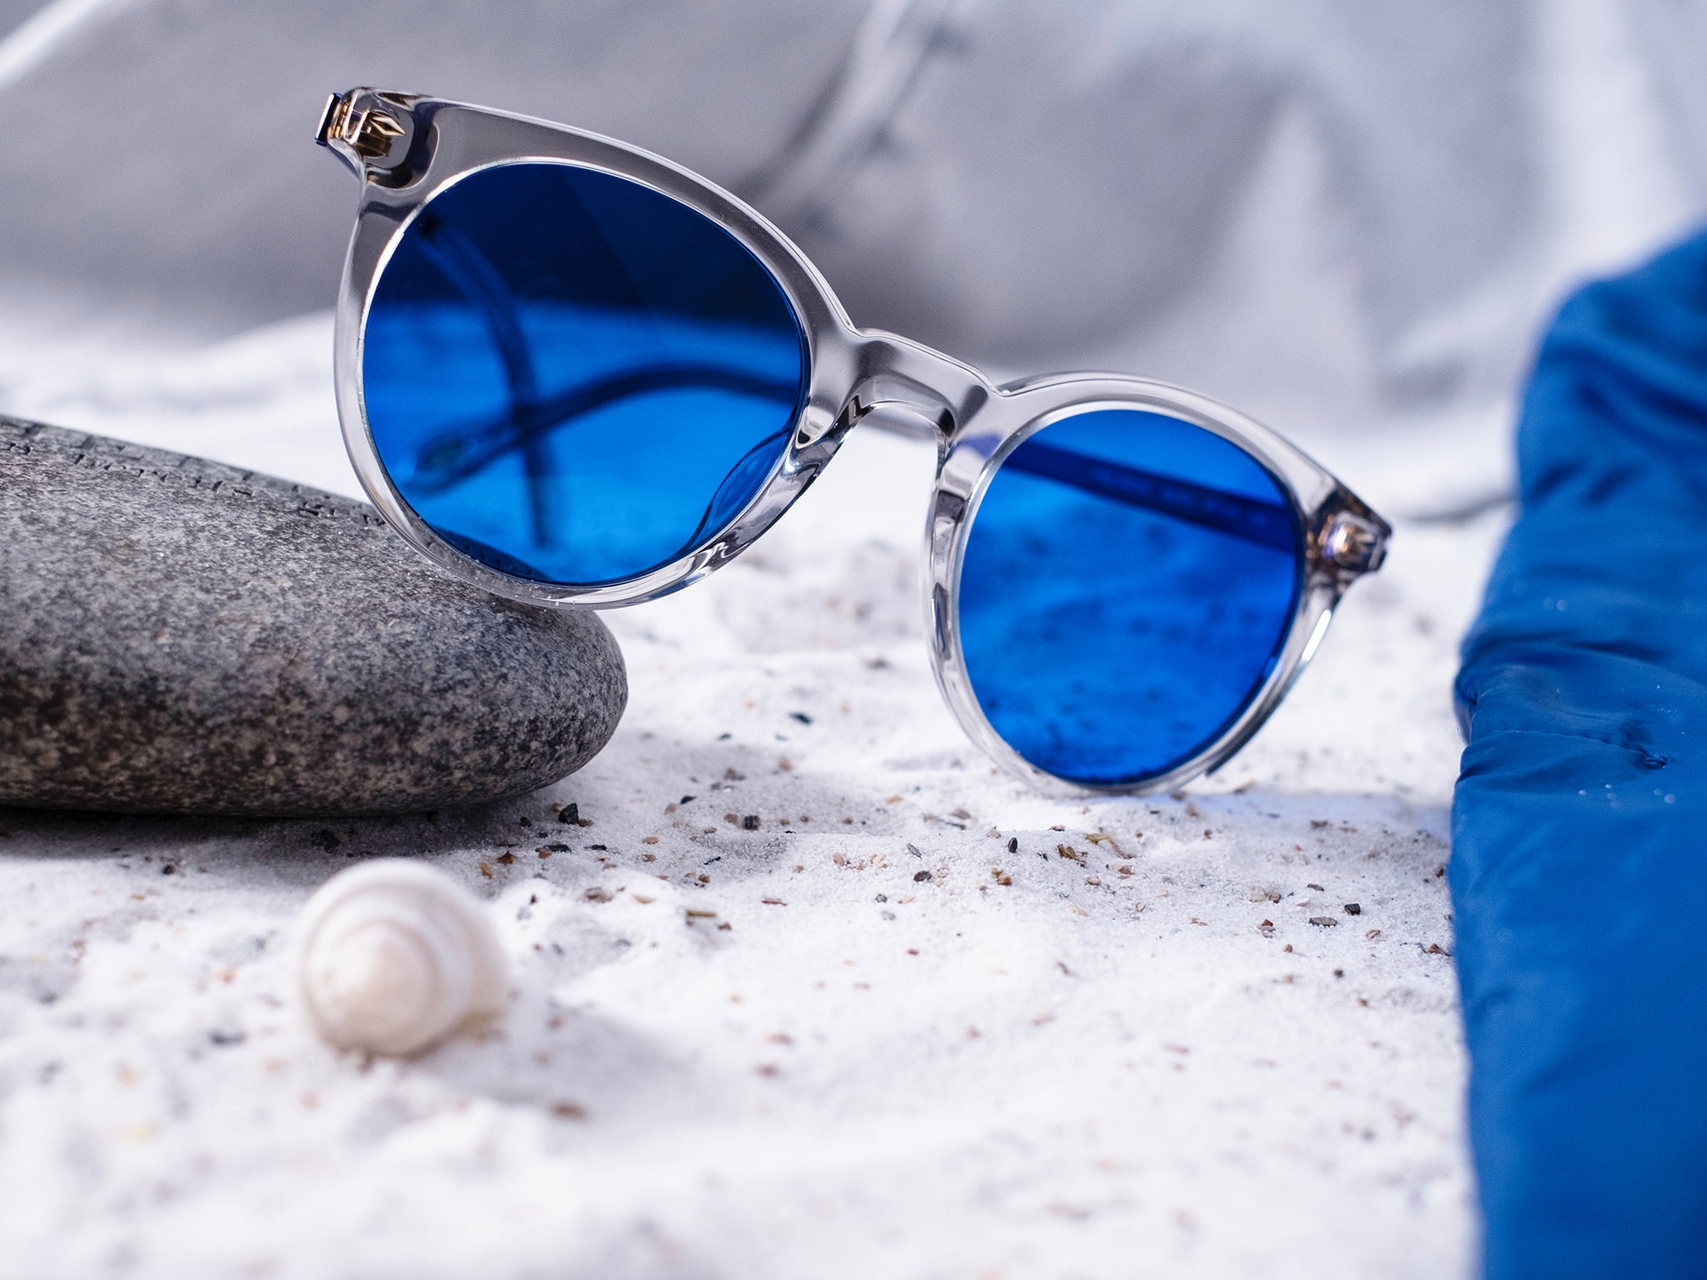 Zdjęcie pary okularów przeciwsłonecznych z niebieskim barwieniem, częściowo leżących na kamieniu